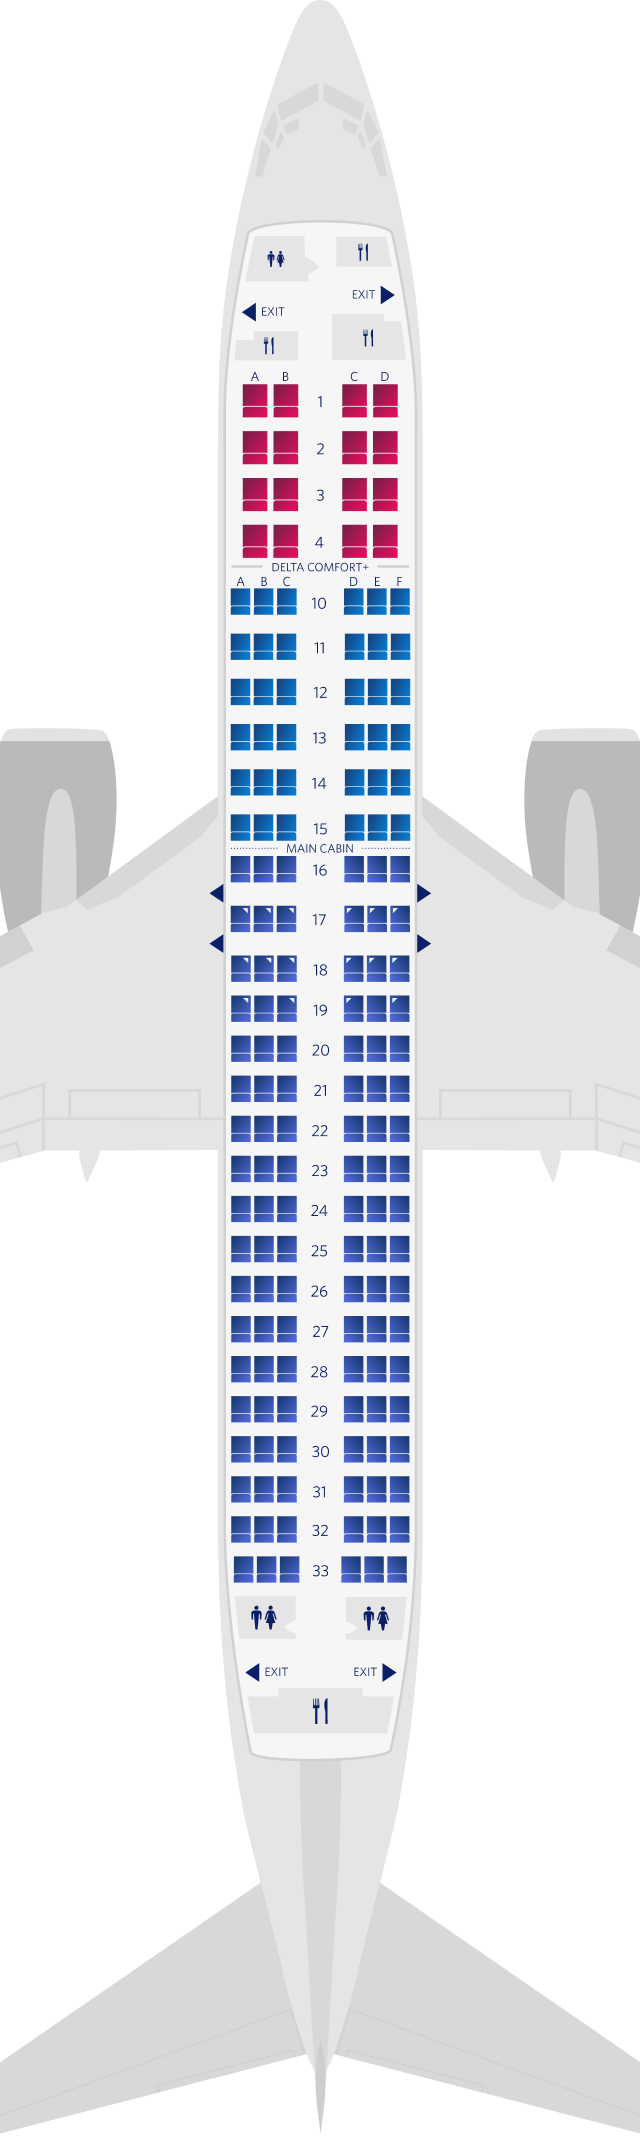 Configuration des sièges du Boeing 737-800